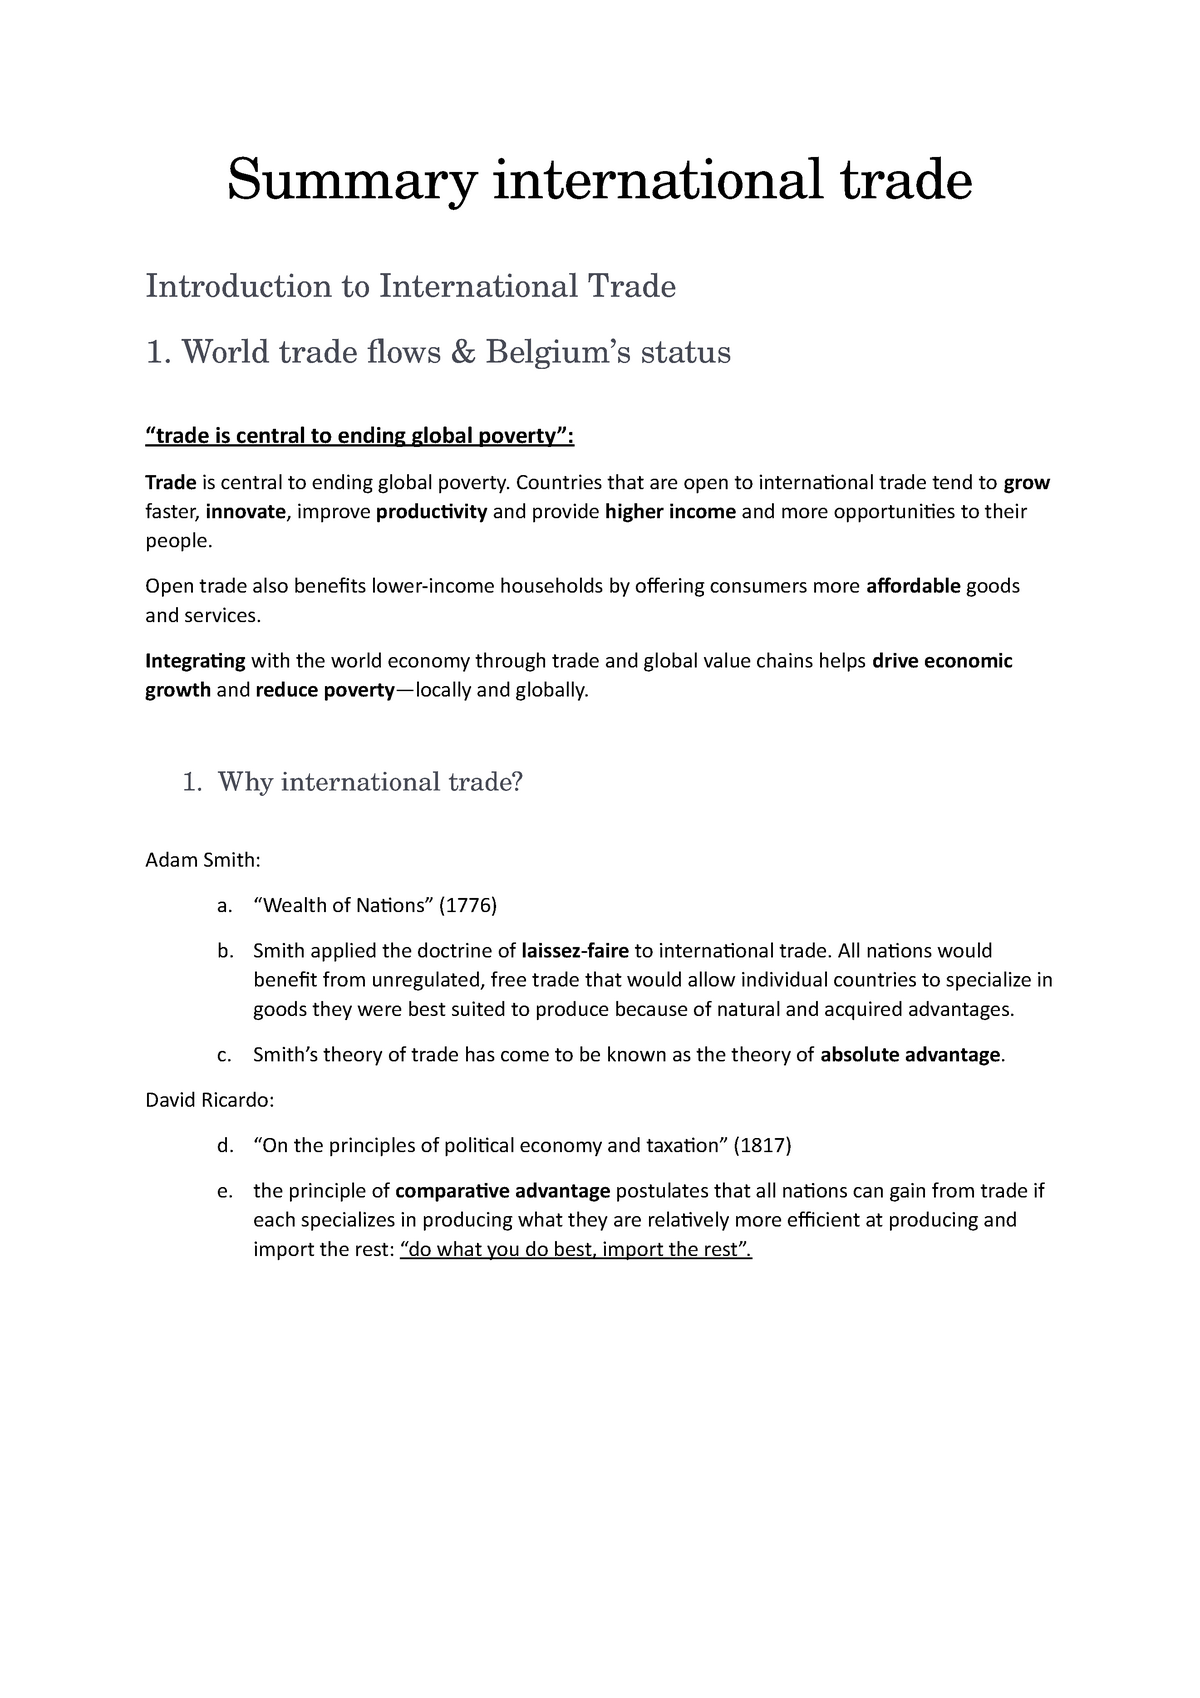 dissertation in international trade